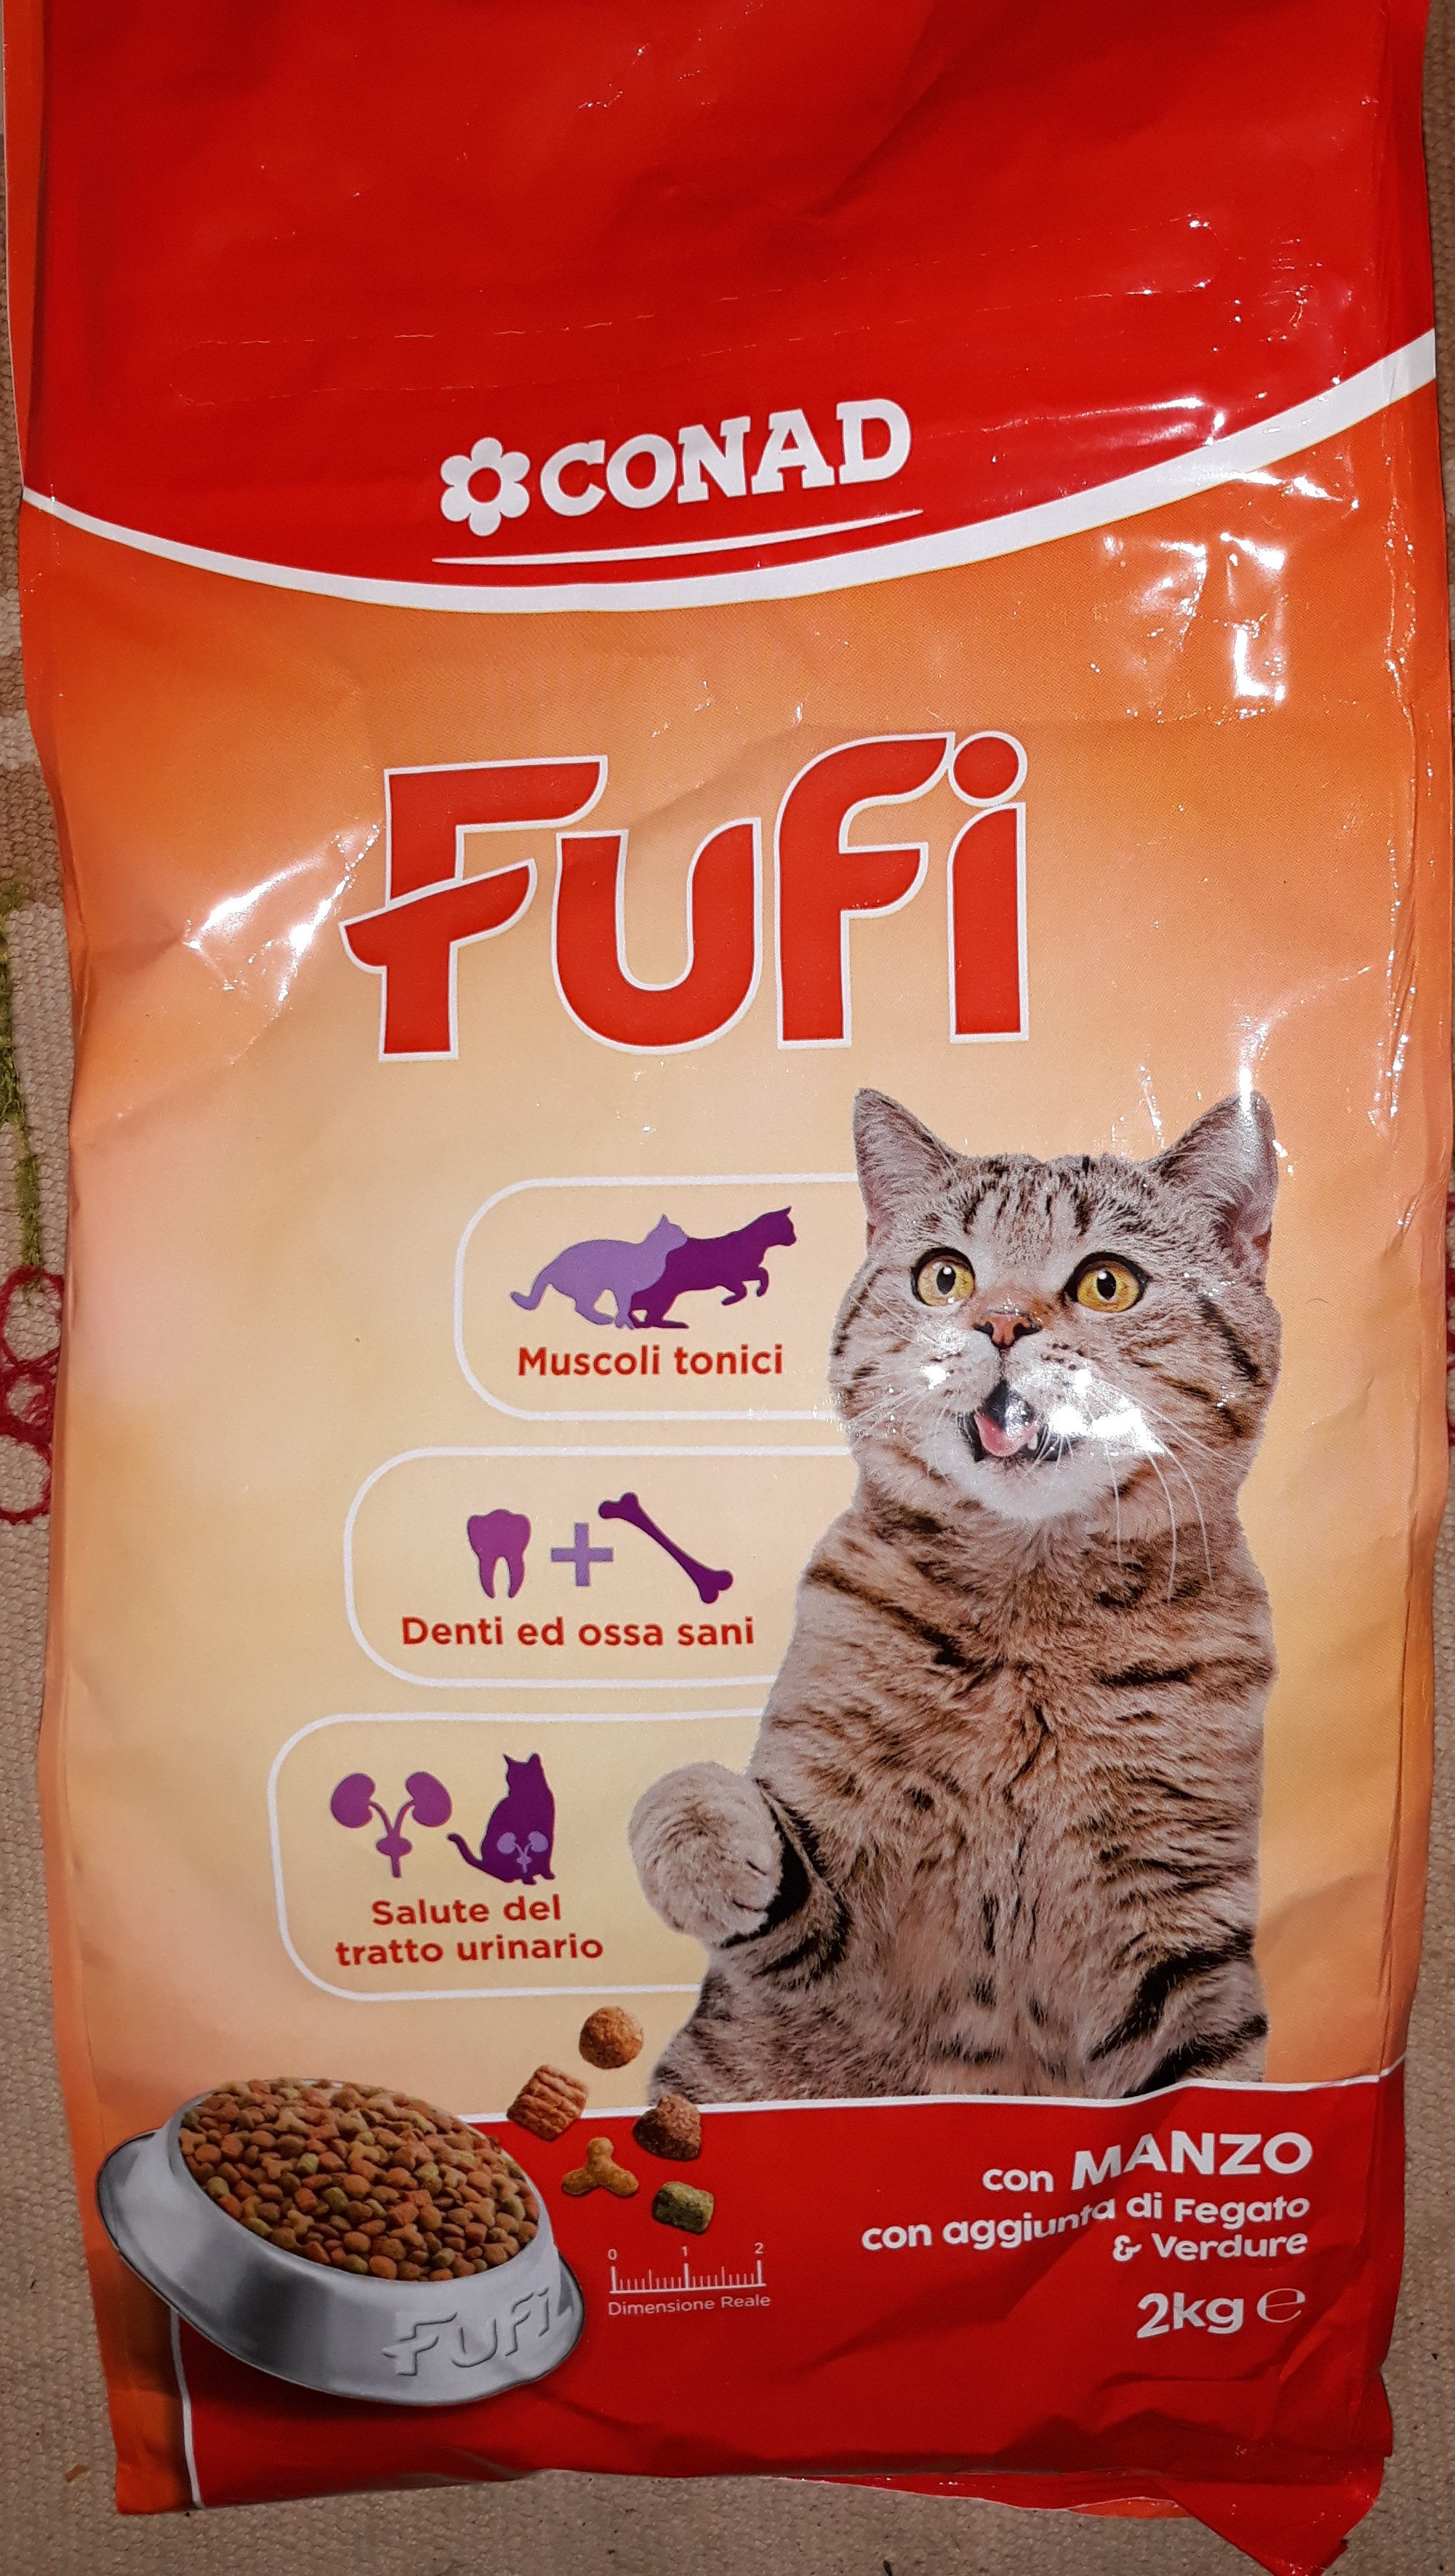 Fufi - Product - it